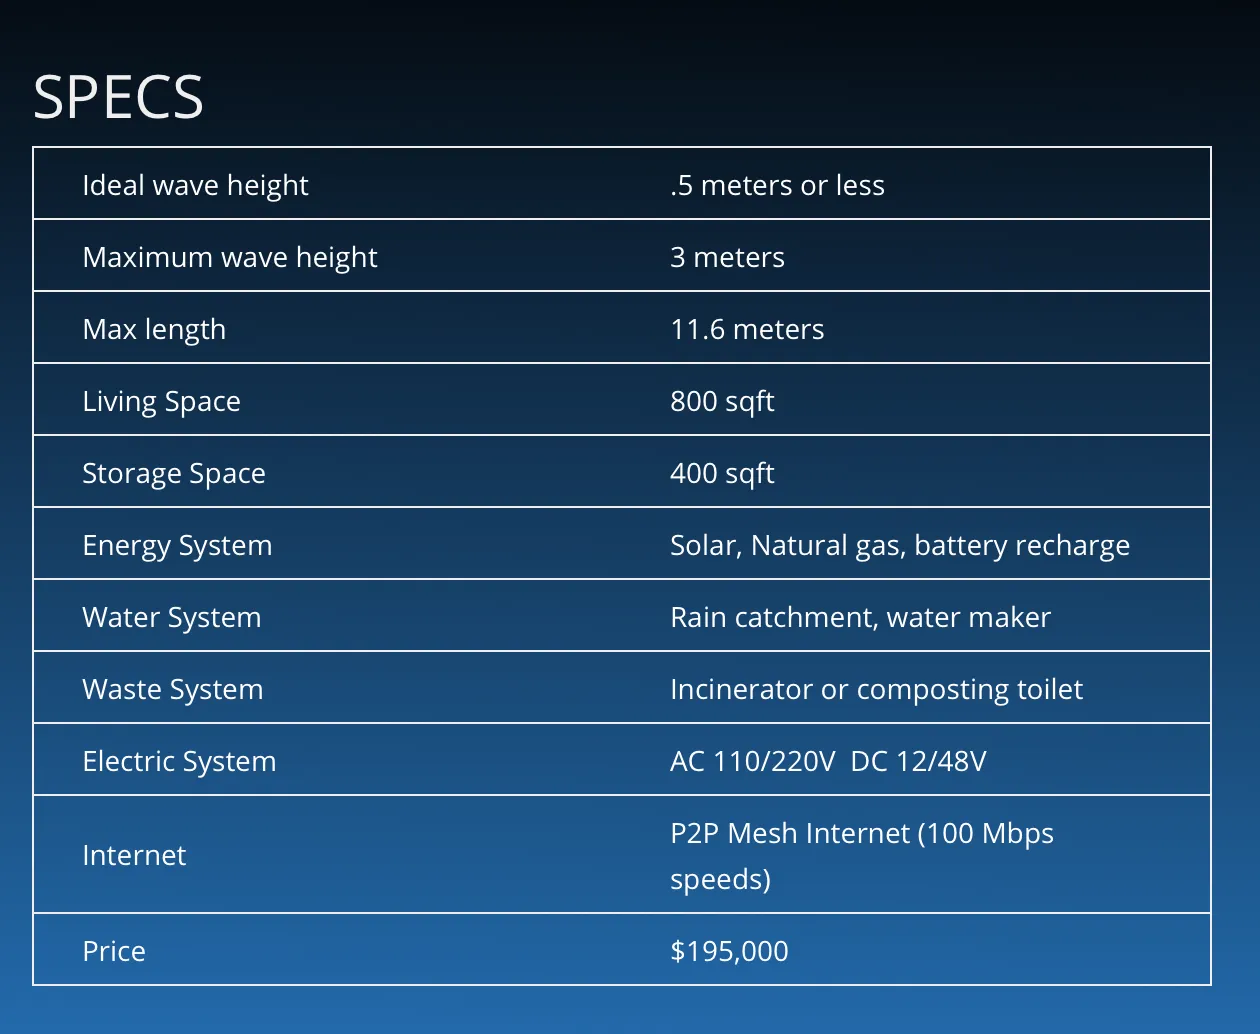 Especificaciones técnicas del Seapod. Image: Ocean Builders